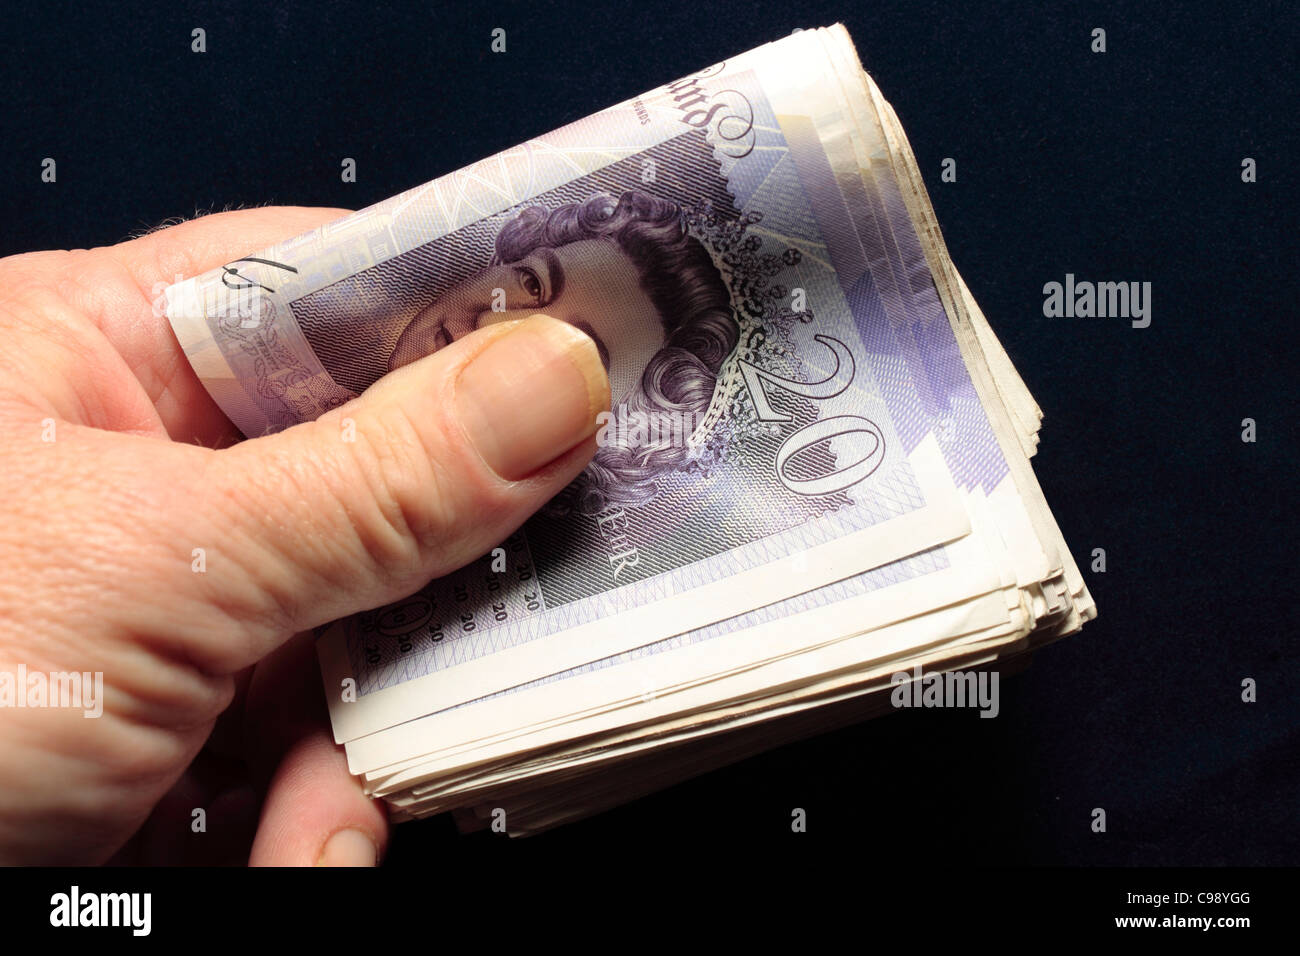 Une liasse de billets de 20 € tenue dans la main pliée entre le pouce et les doigts Banque D'Images